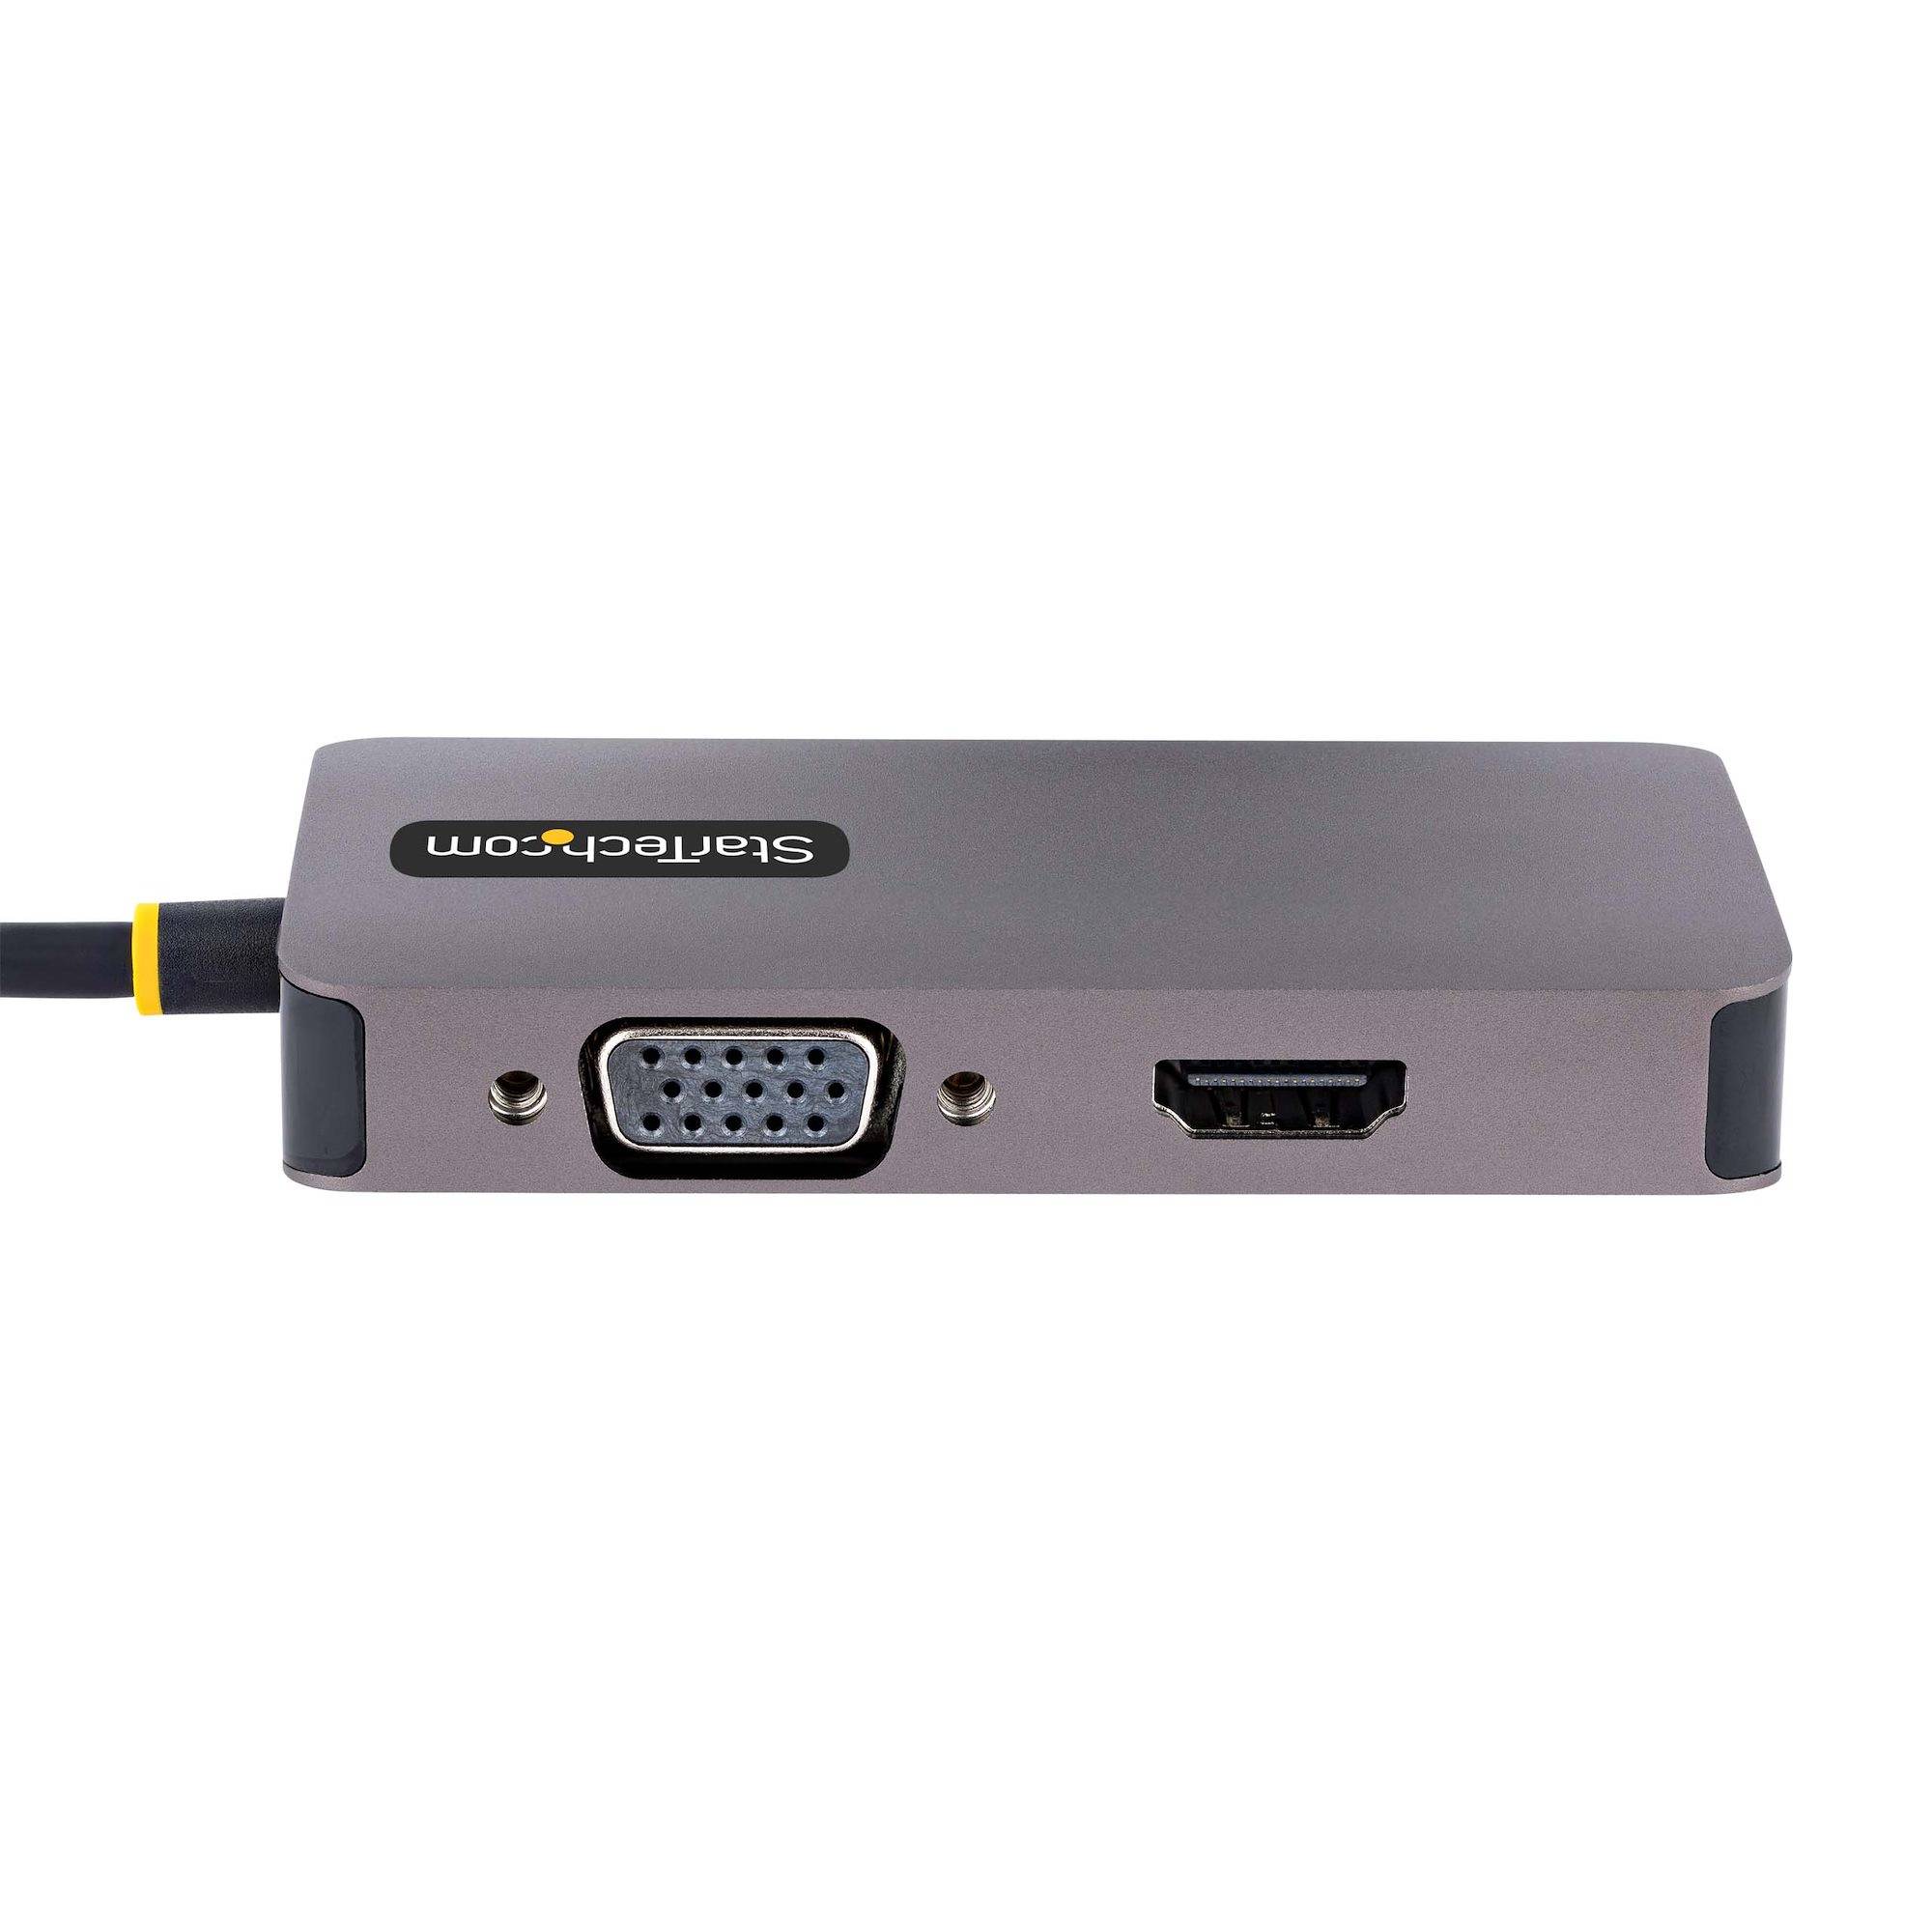 Rca Informatique - image du produit : ADAPTATEUR USB C VERS HDMI VG A - DOCK USB TYPE C MULTIPORT